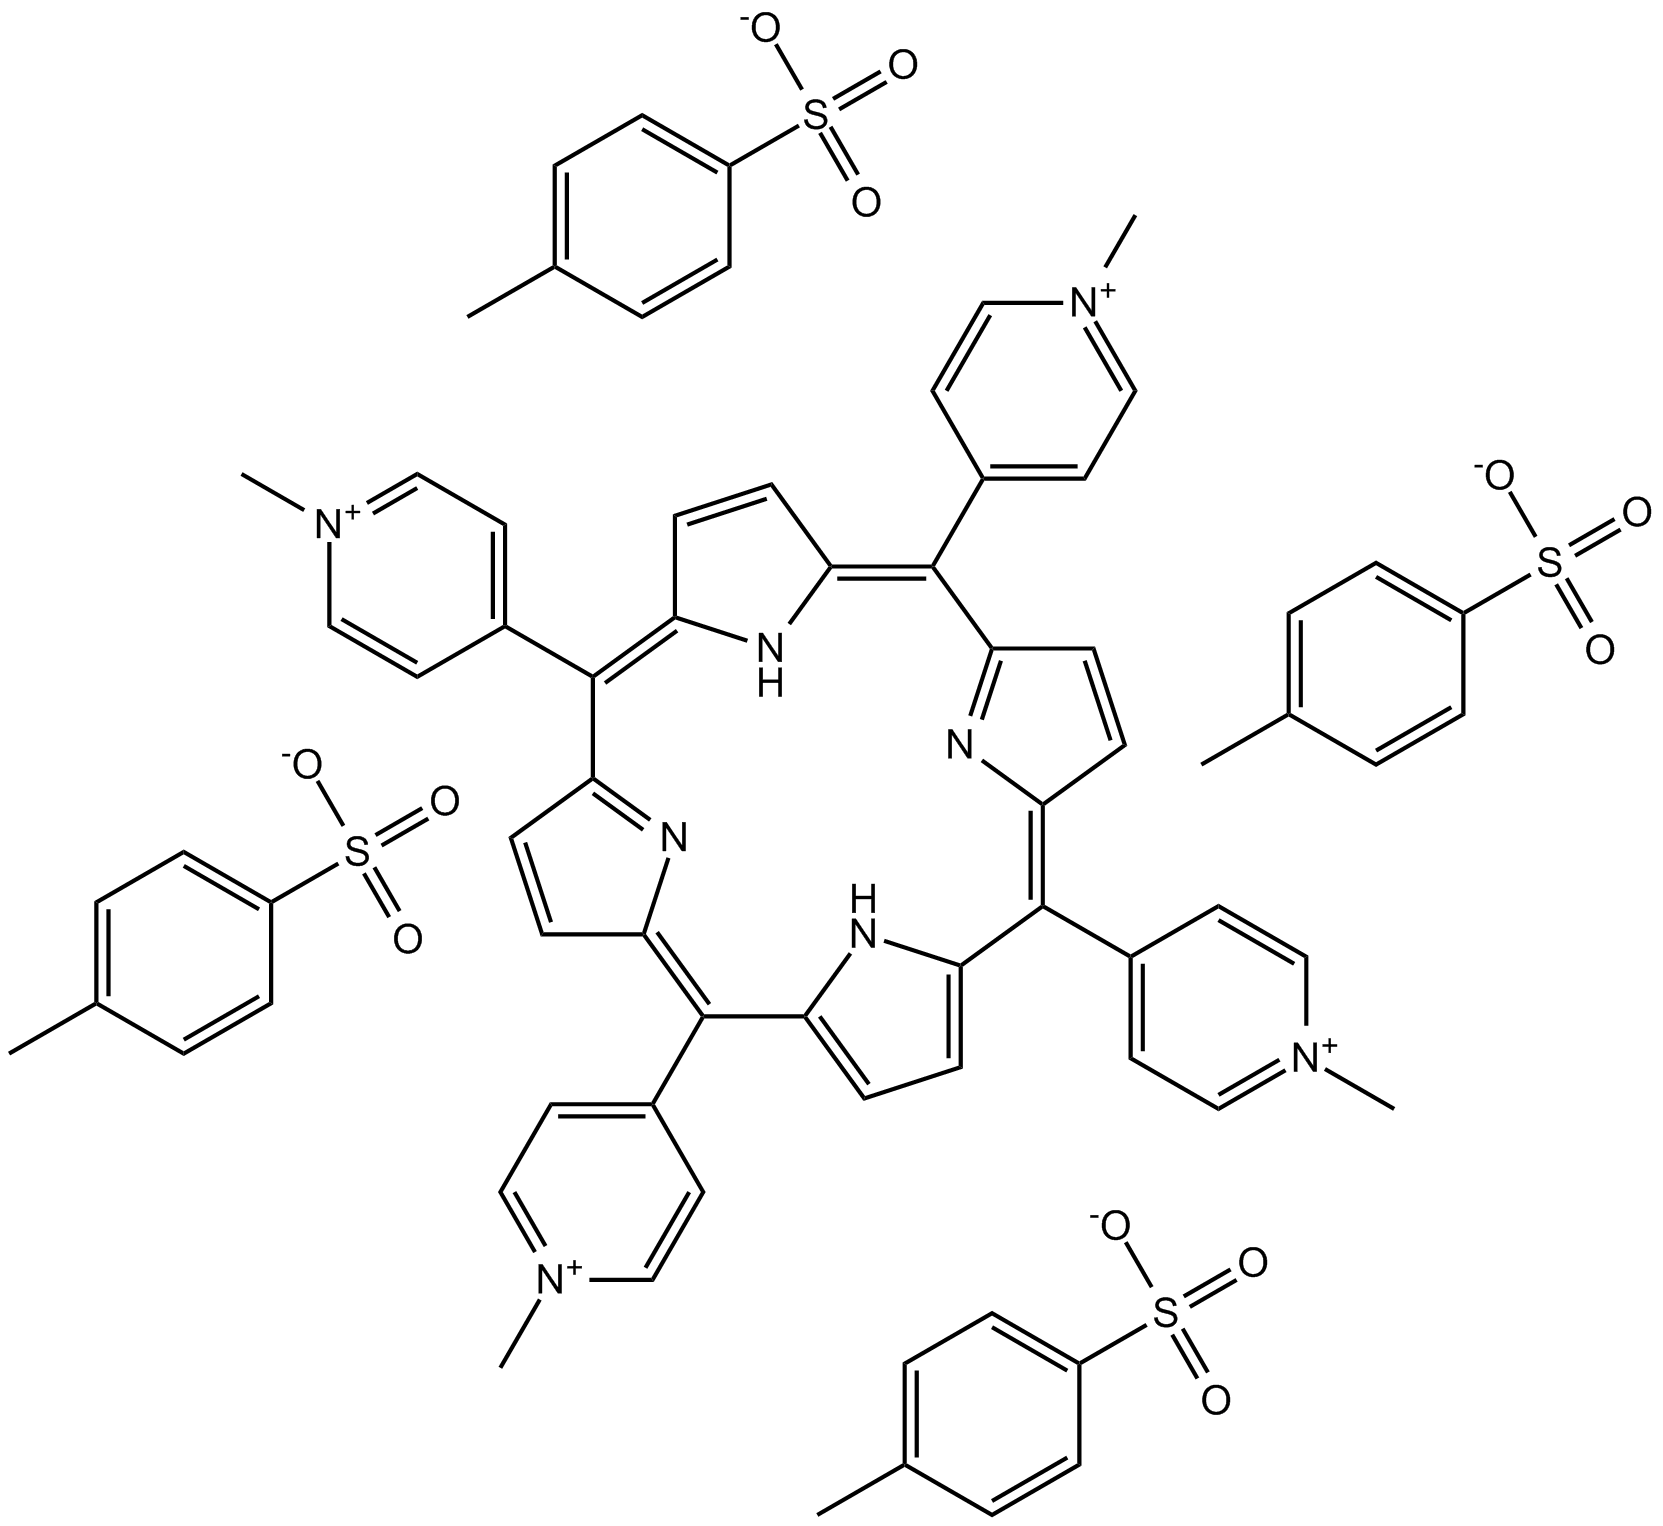 TMPyP4 tosylate Chemische Struktur